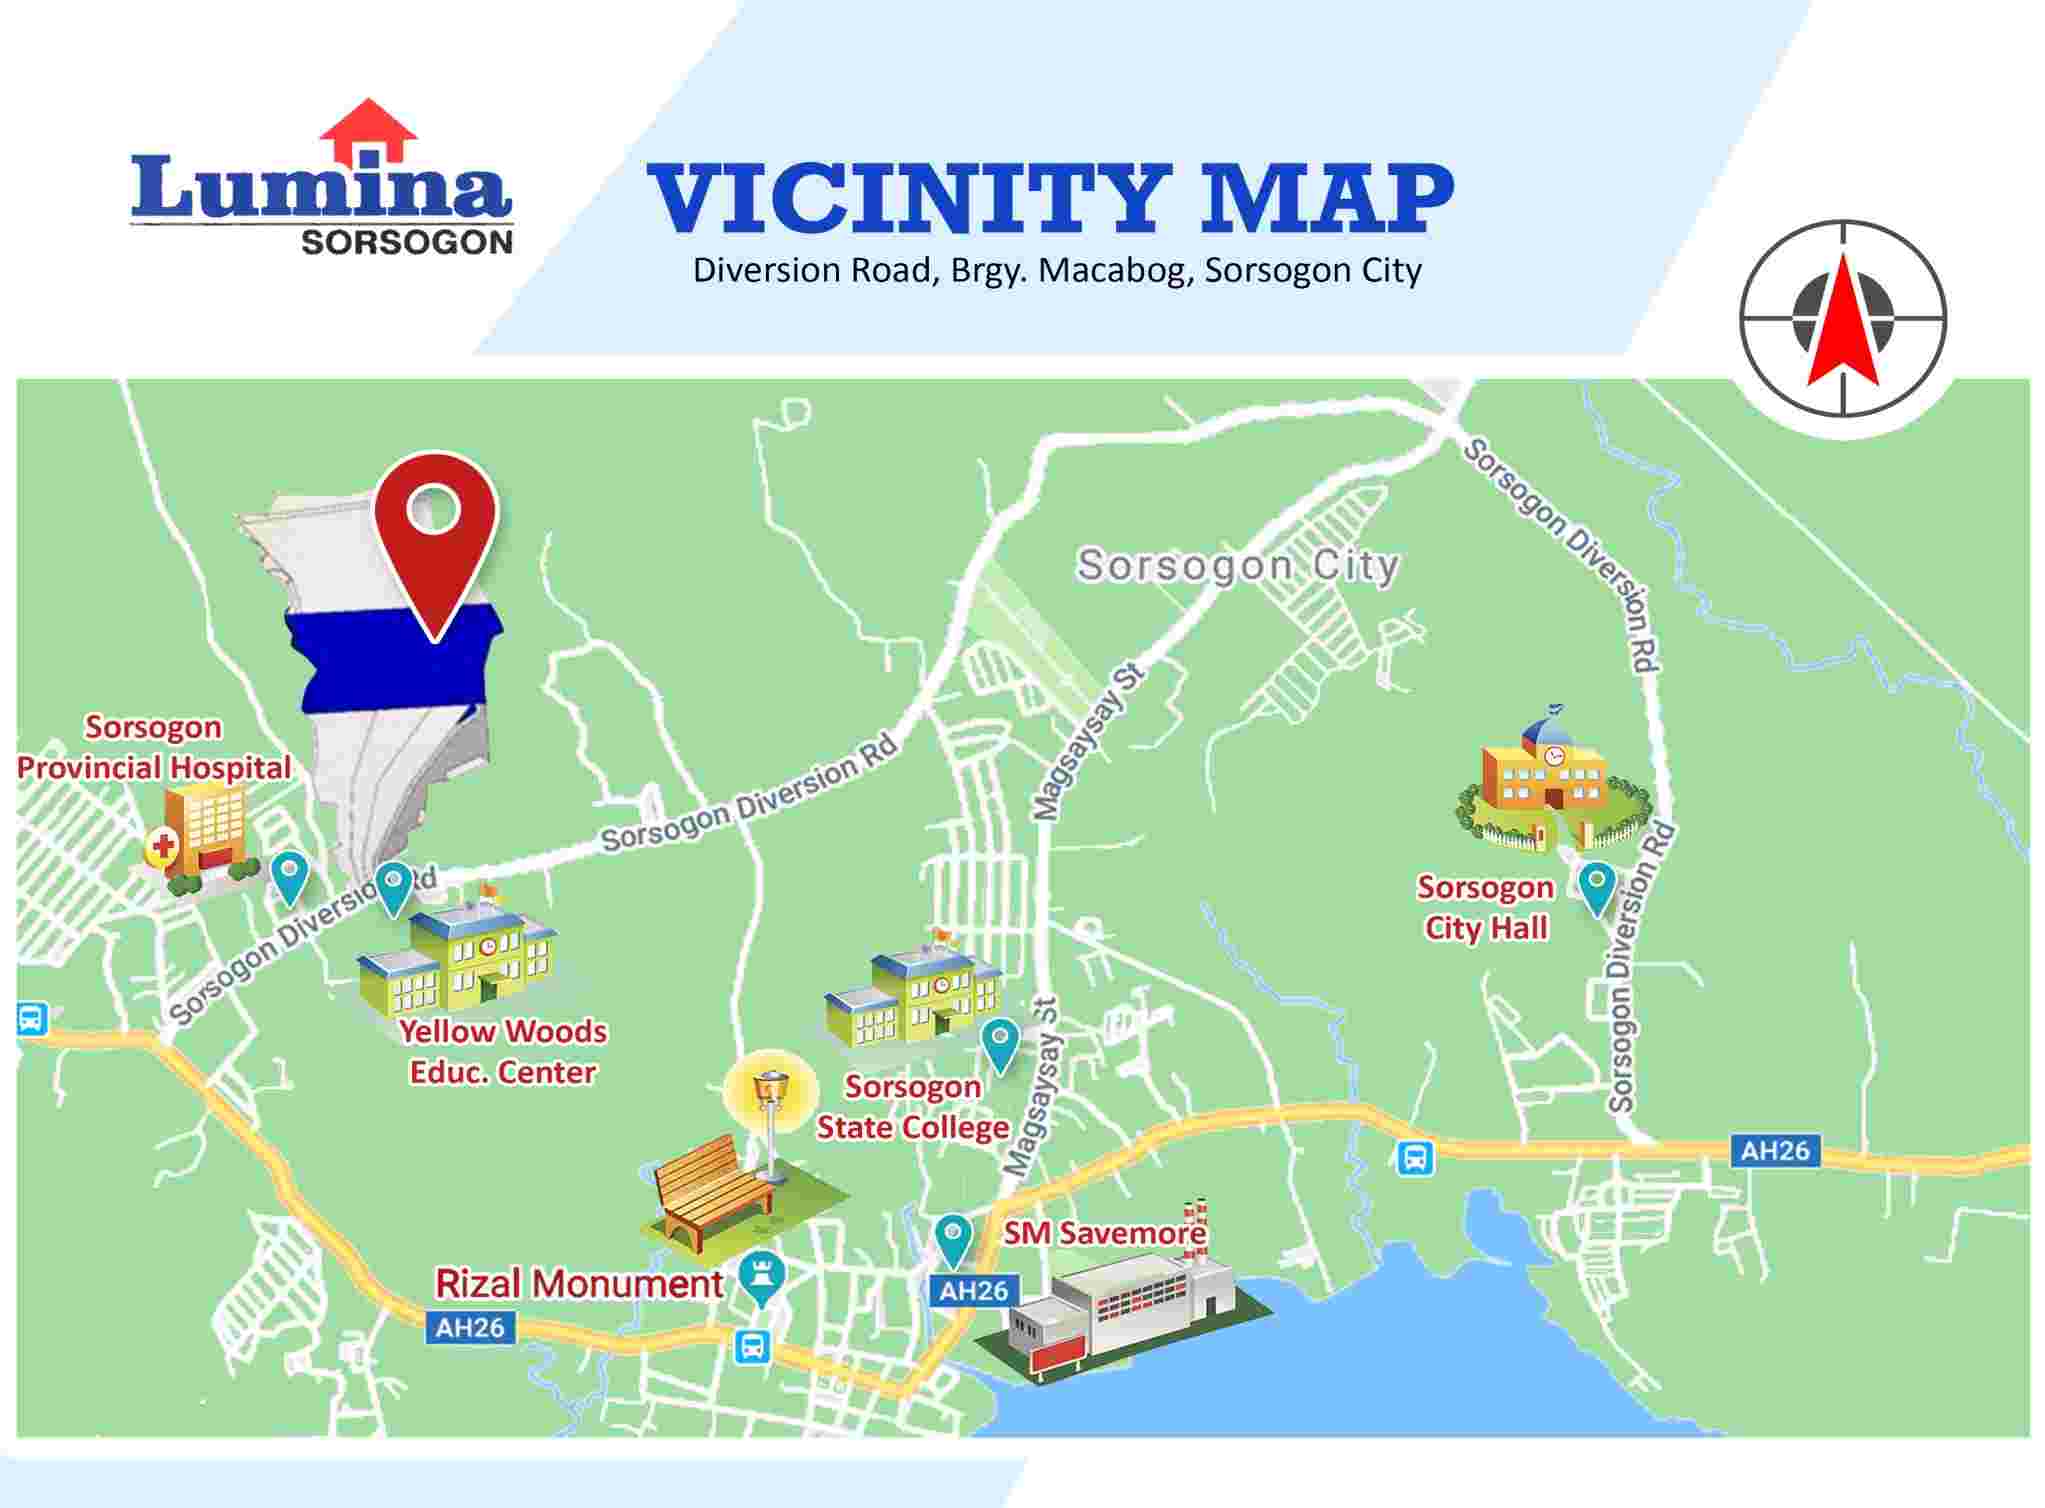 Vicinity-Map-1638774921.jpeg